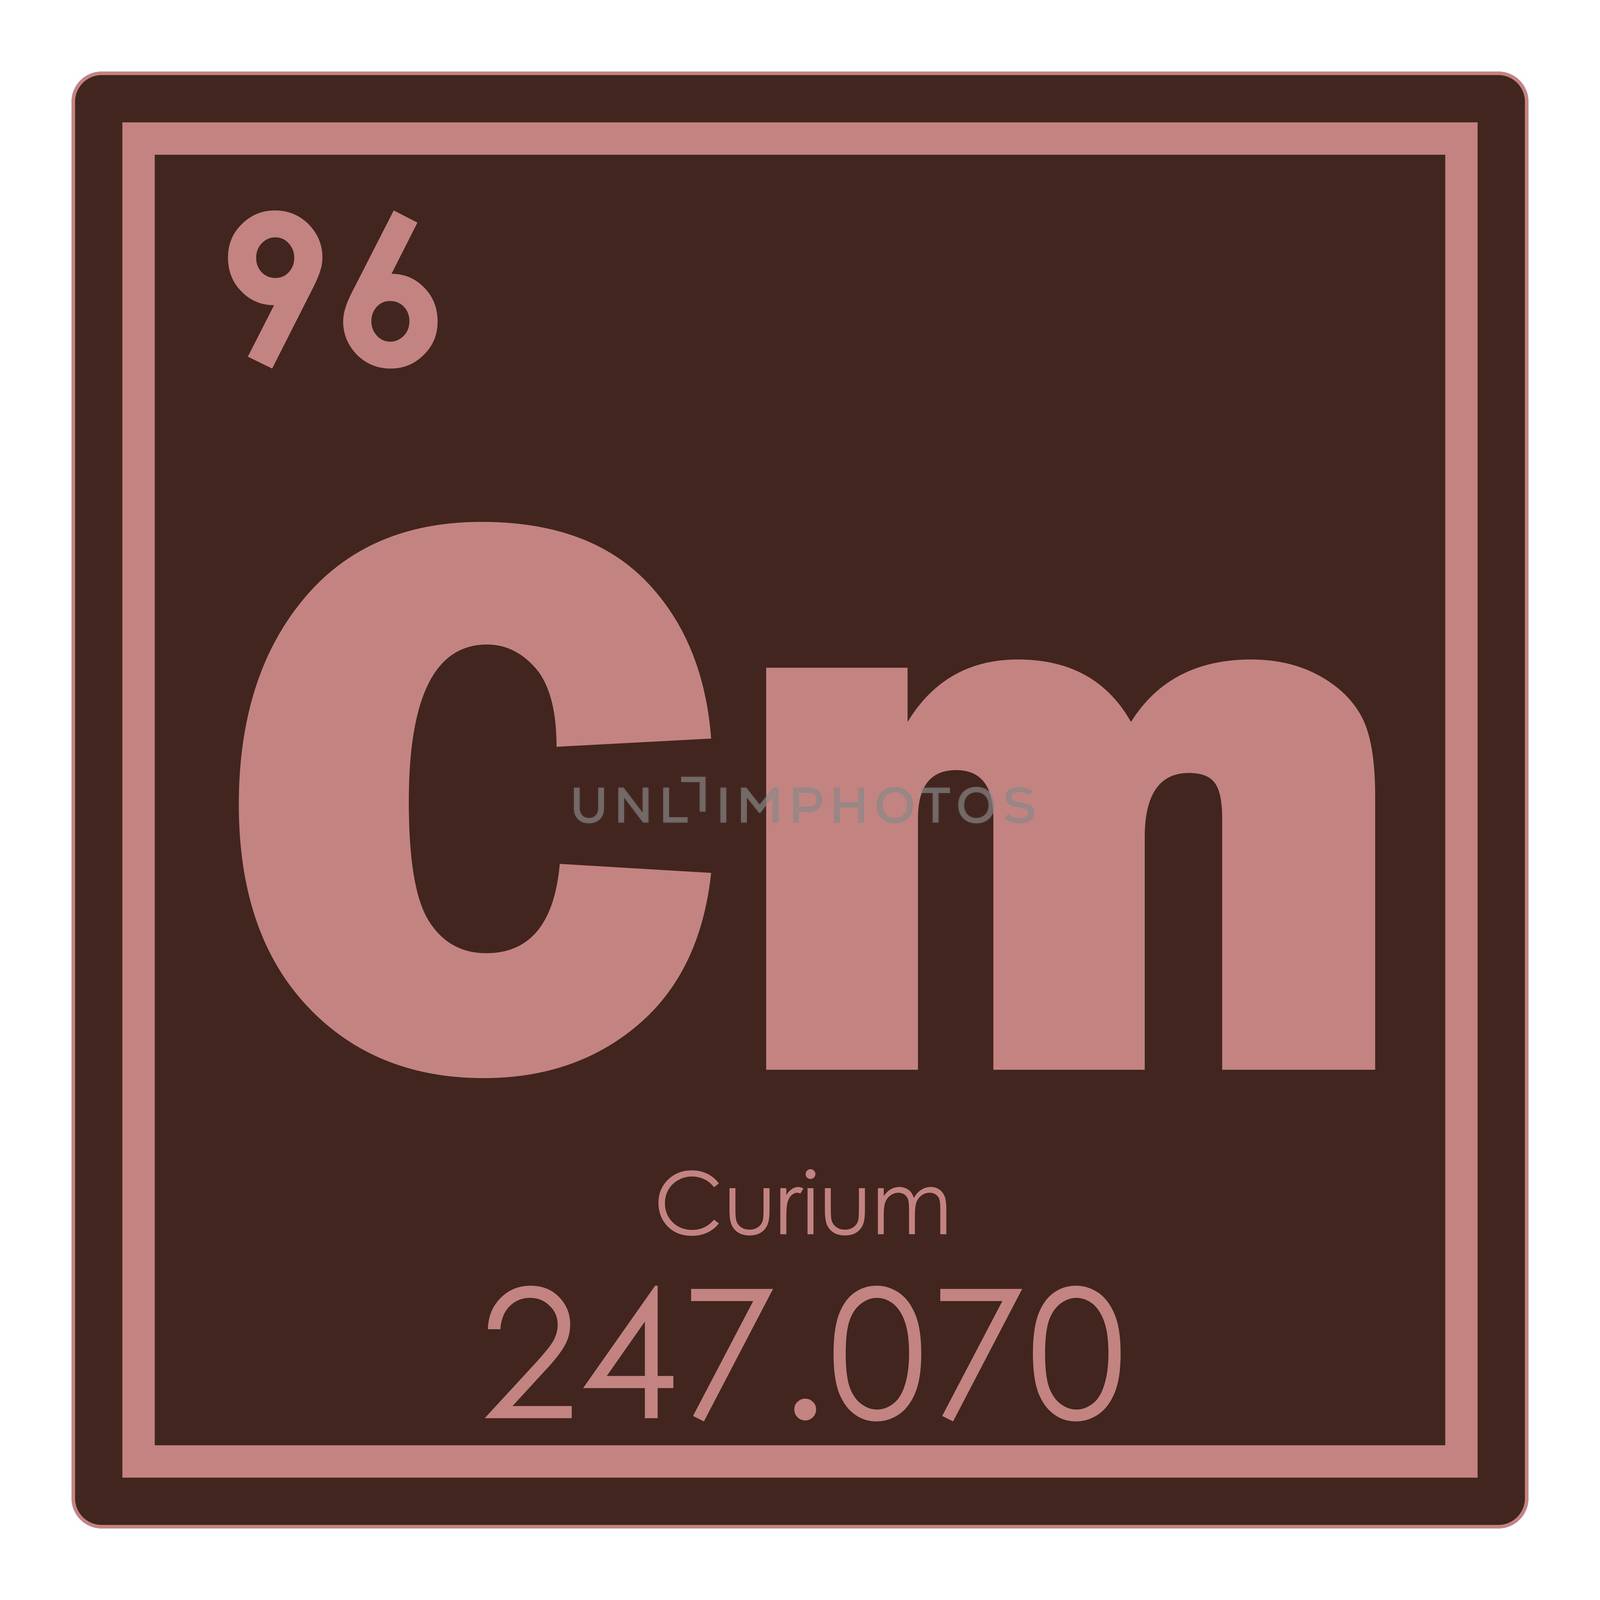 Curium chemical element periodic table science symbol